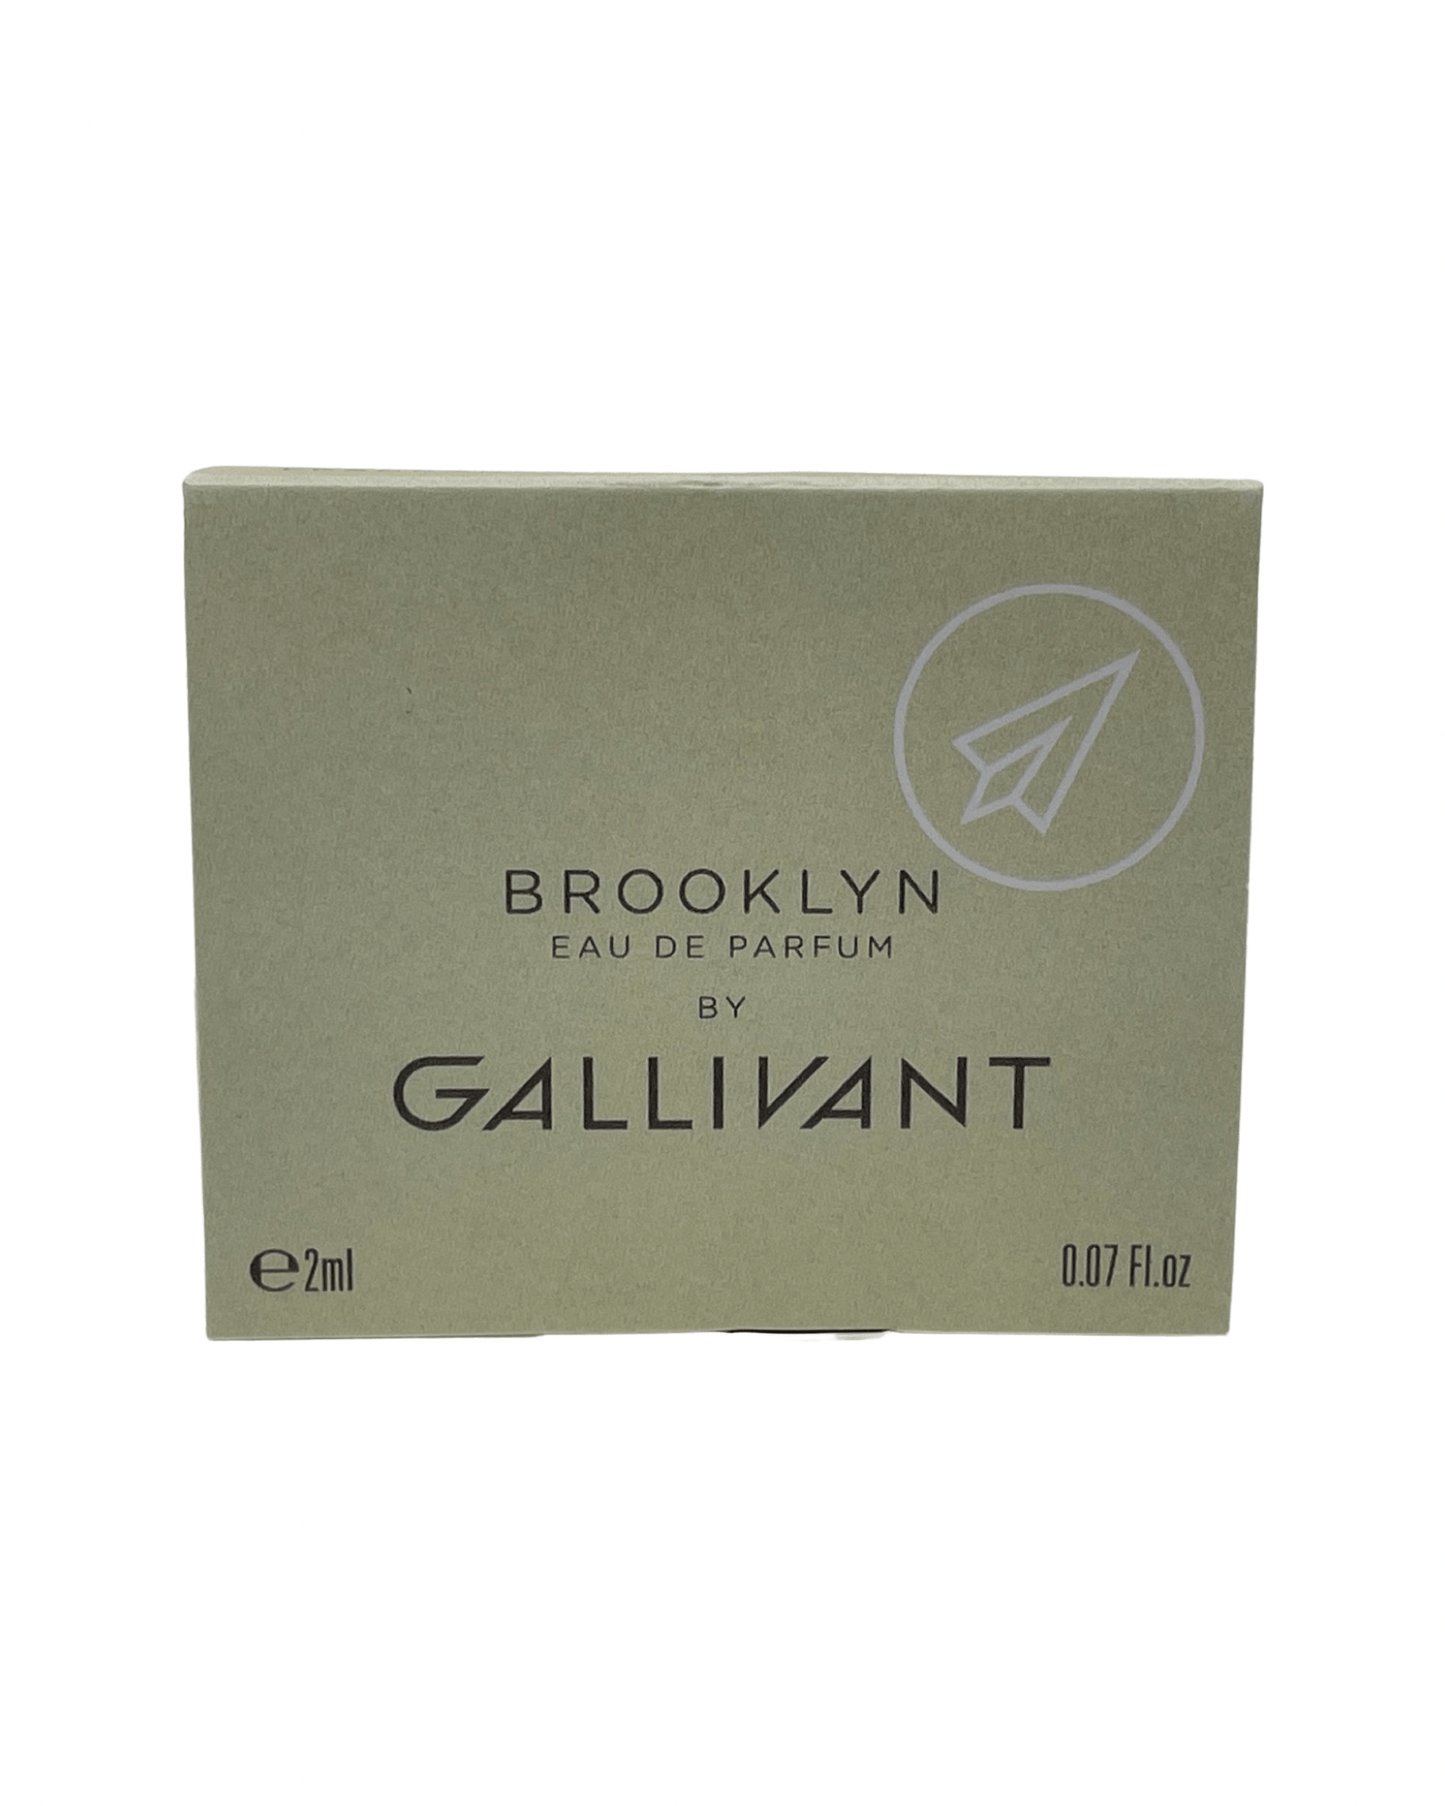 Gallivant - Brooklyn - 2ml.